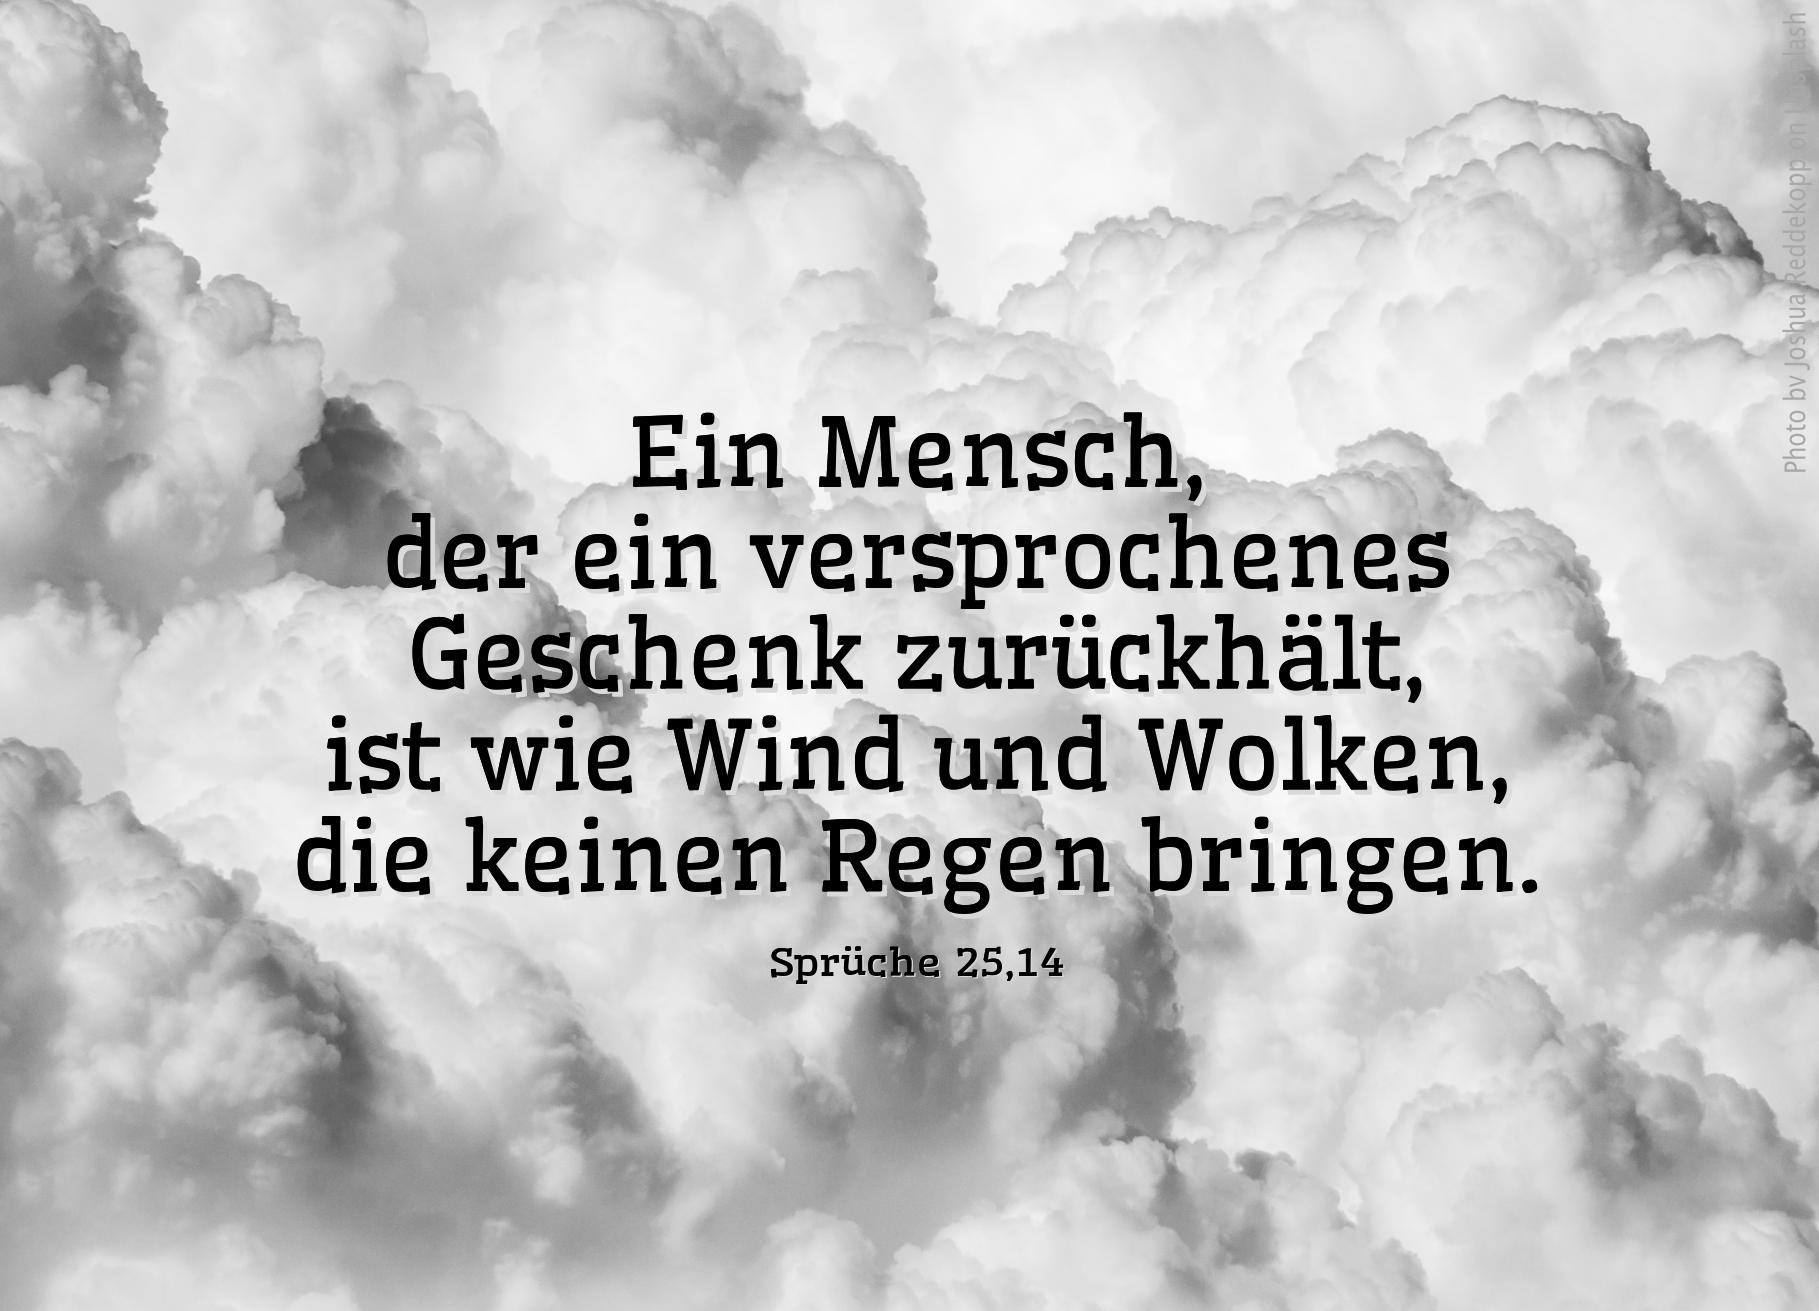 alt="dicke_weisse_Wolken_erwartet_bibelhoerbuch_Bedraengnis_und_Gericht"